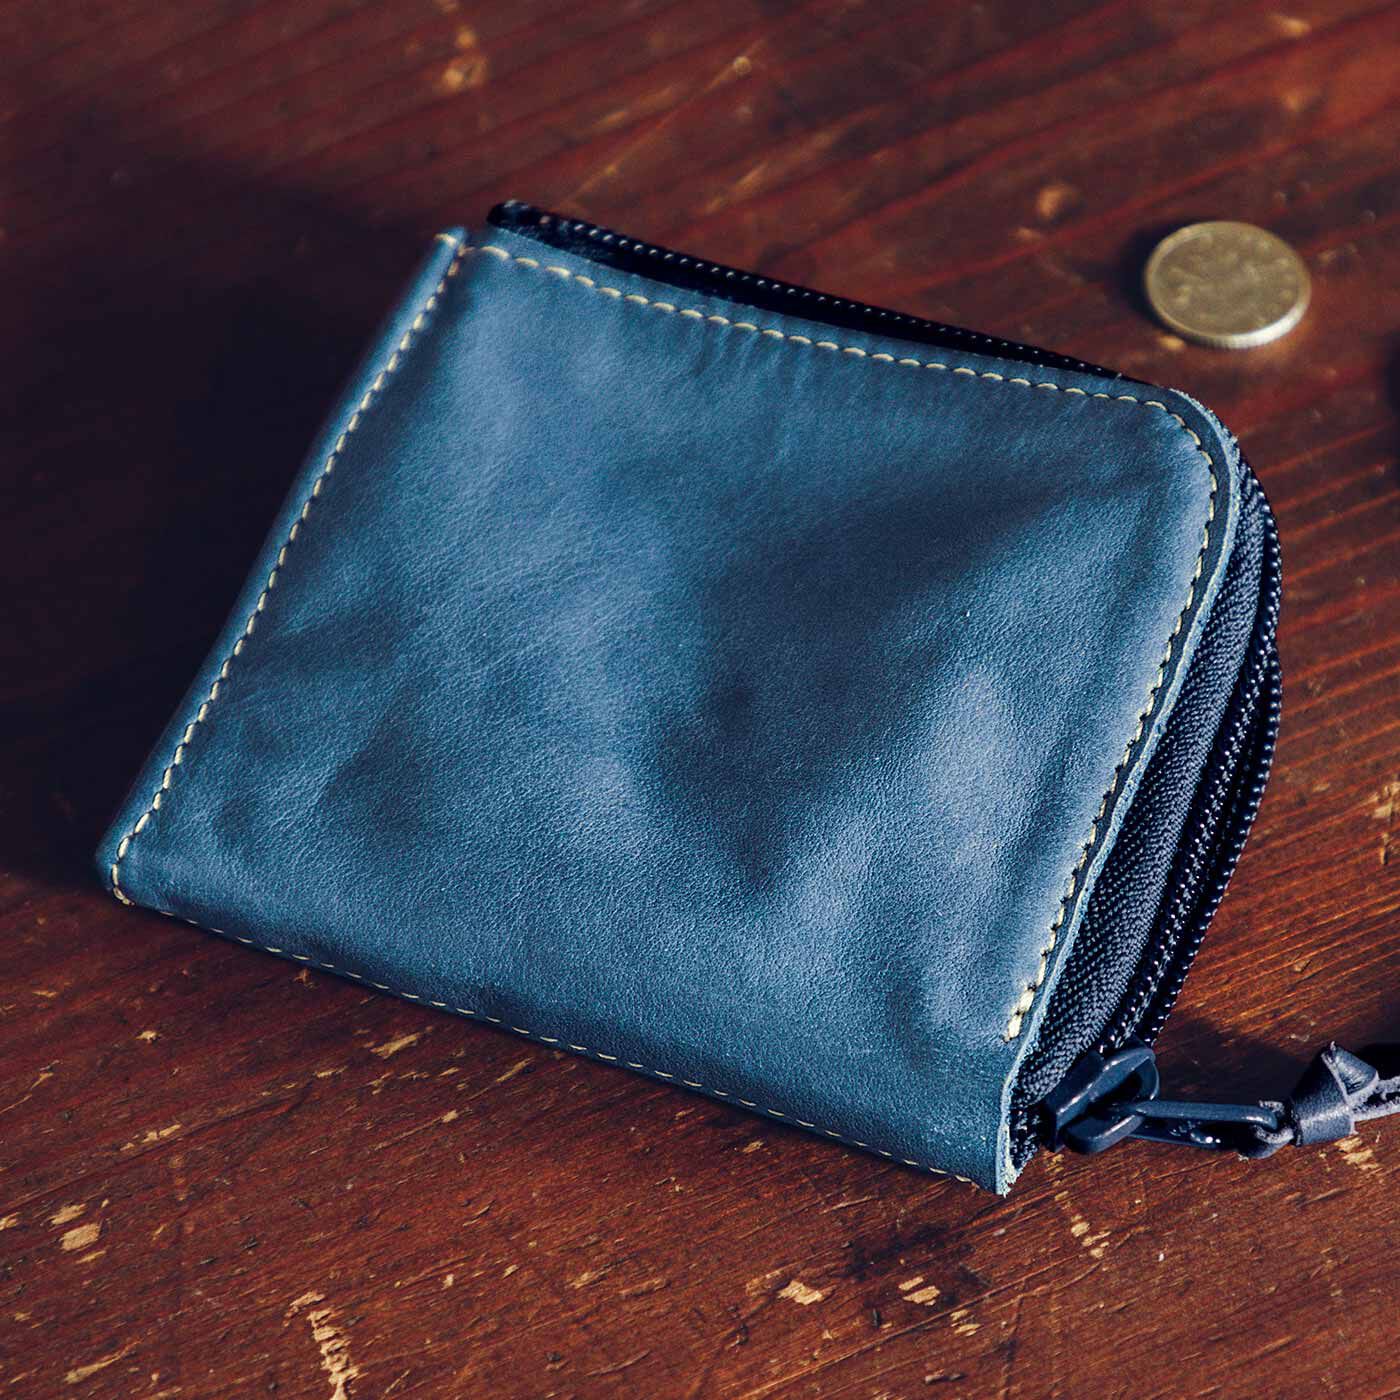 USEDo|古着屋さんで見つけたような ヴィンテージ感あふれるインディゴ染めの本革ミニマム財布〈ユーズドインディゴブルー〉